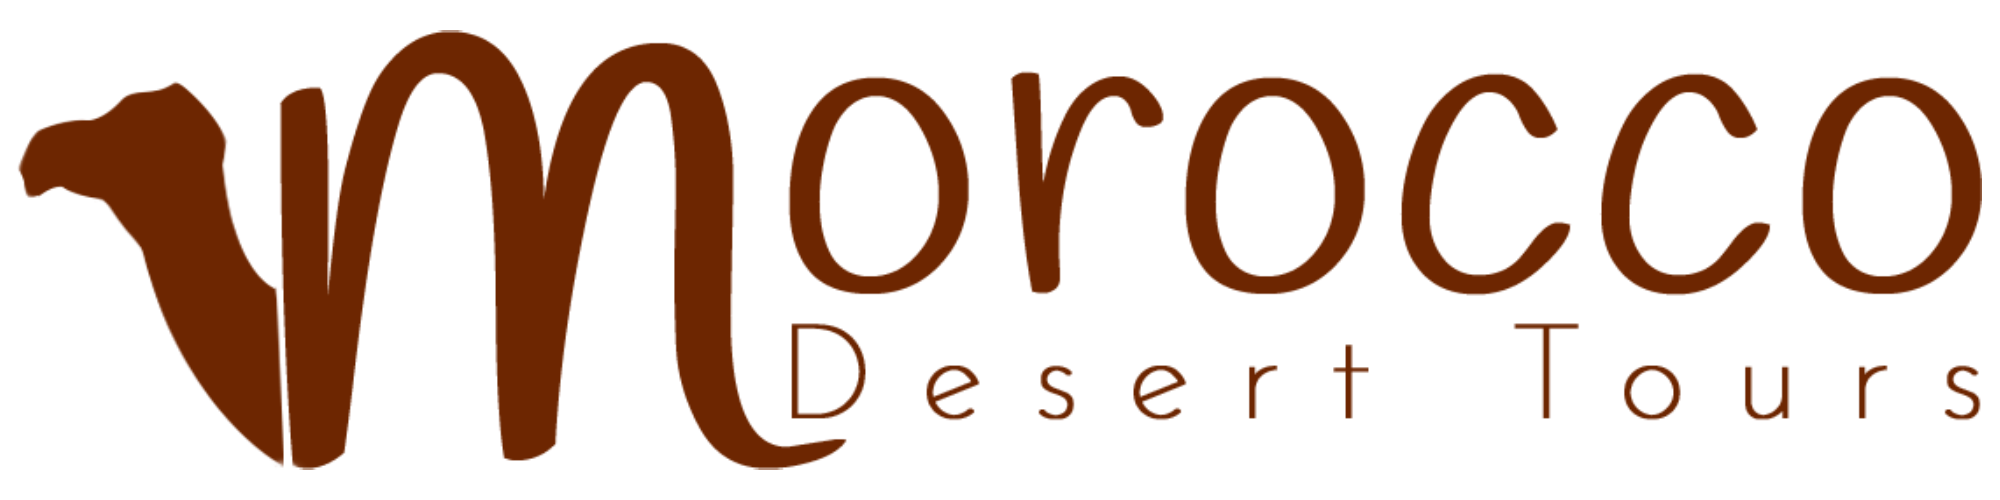 Desert Tour in Morocco